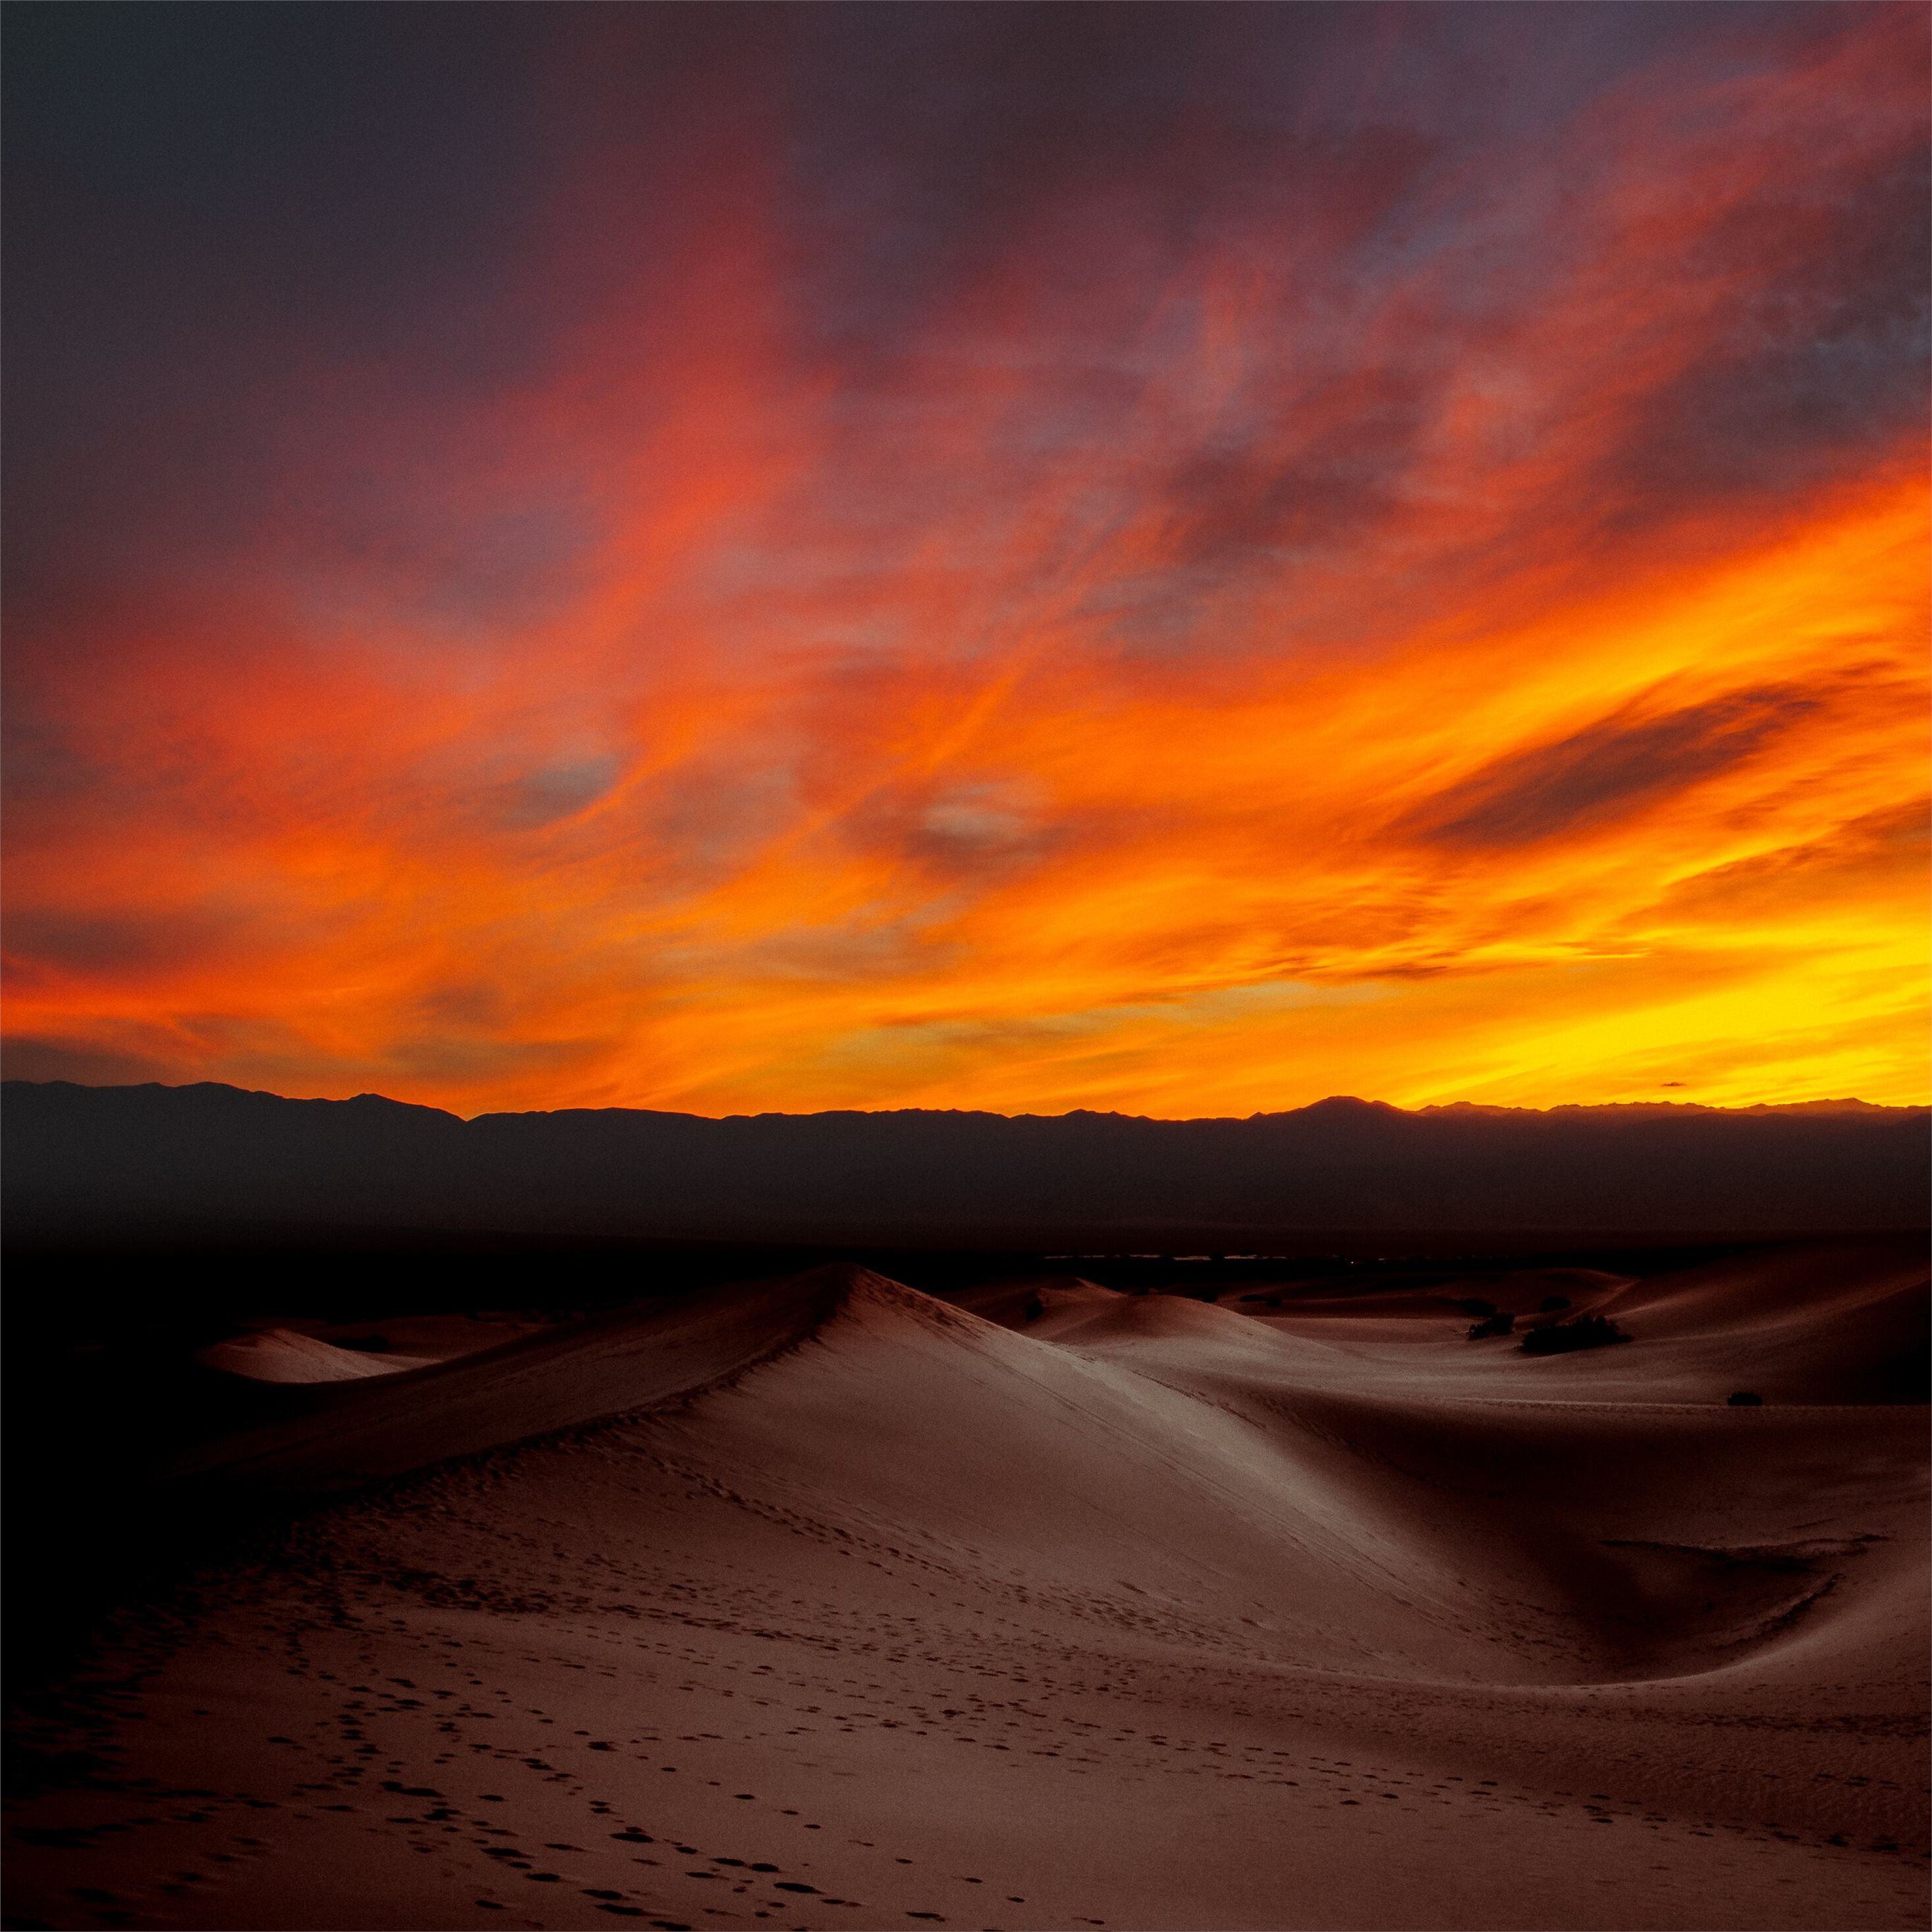 burning sunset dark desert 4k iPad Pro Wallpaper Free Download